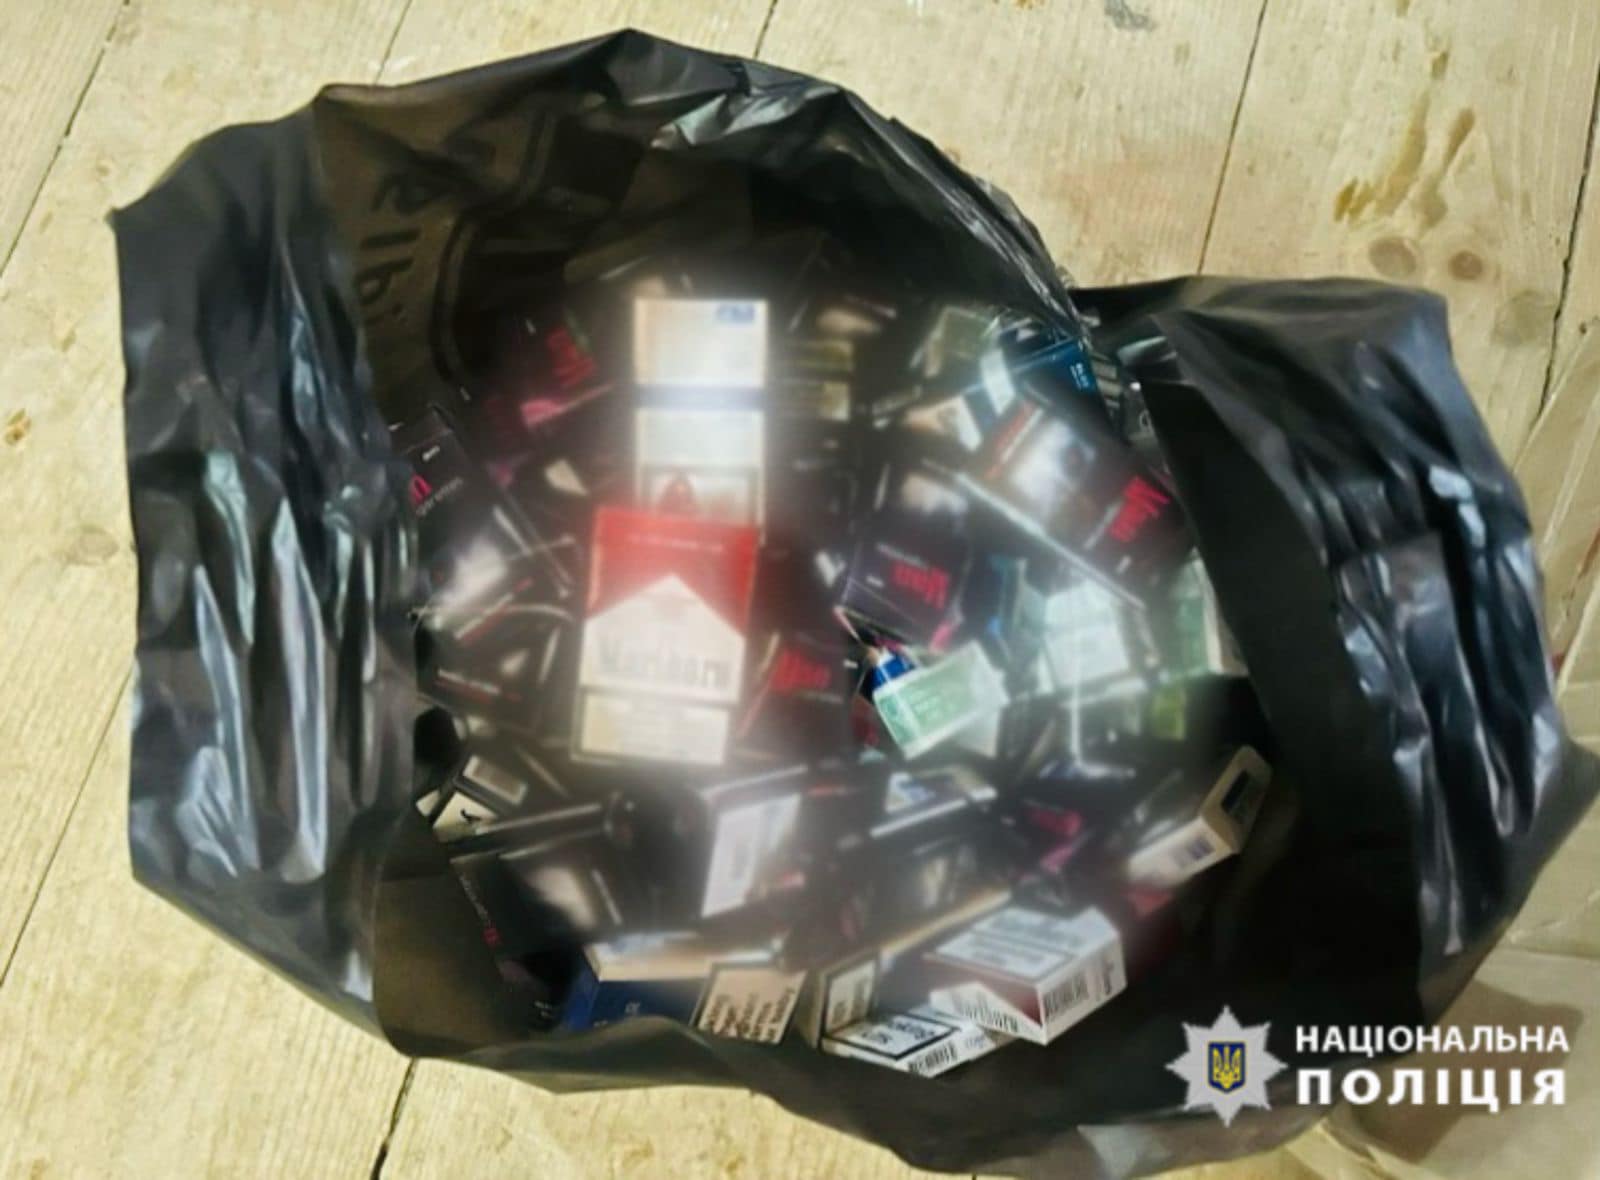 Торгують на вулиці та без ліцензій: поліція Прикарпаття бореться з продажем нелегальних цигарок (ФОТО)